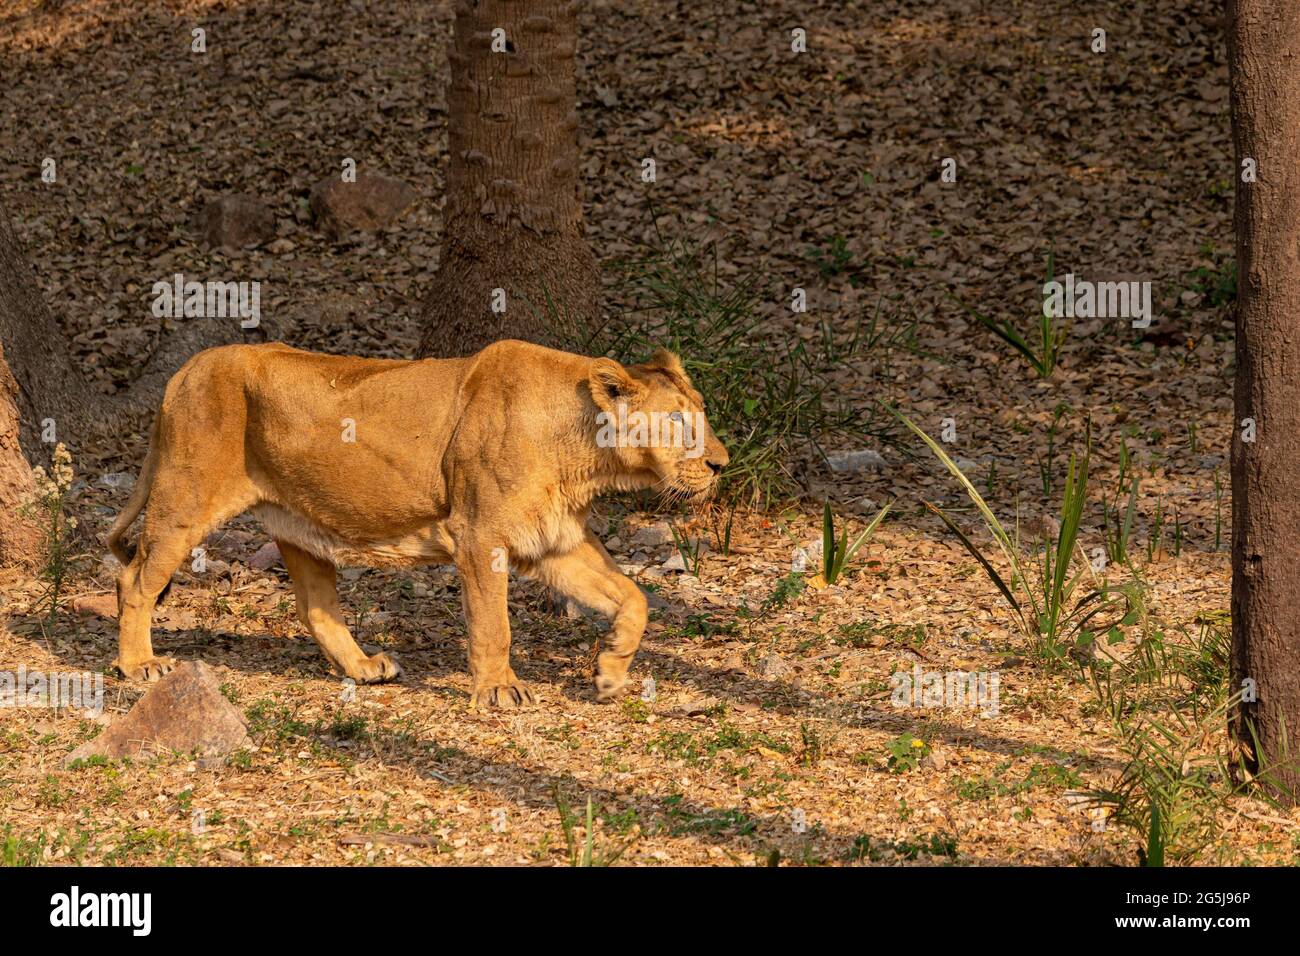 Löwe im Zoo, Wildtierfotografie Stockfoto